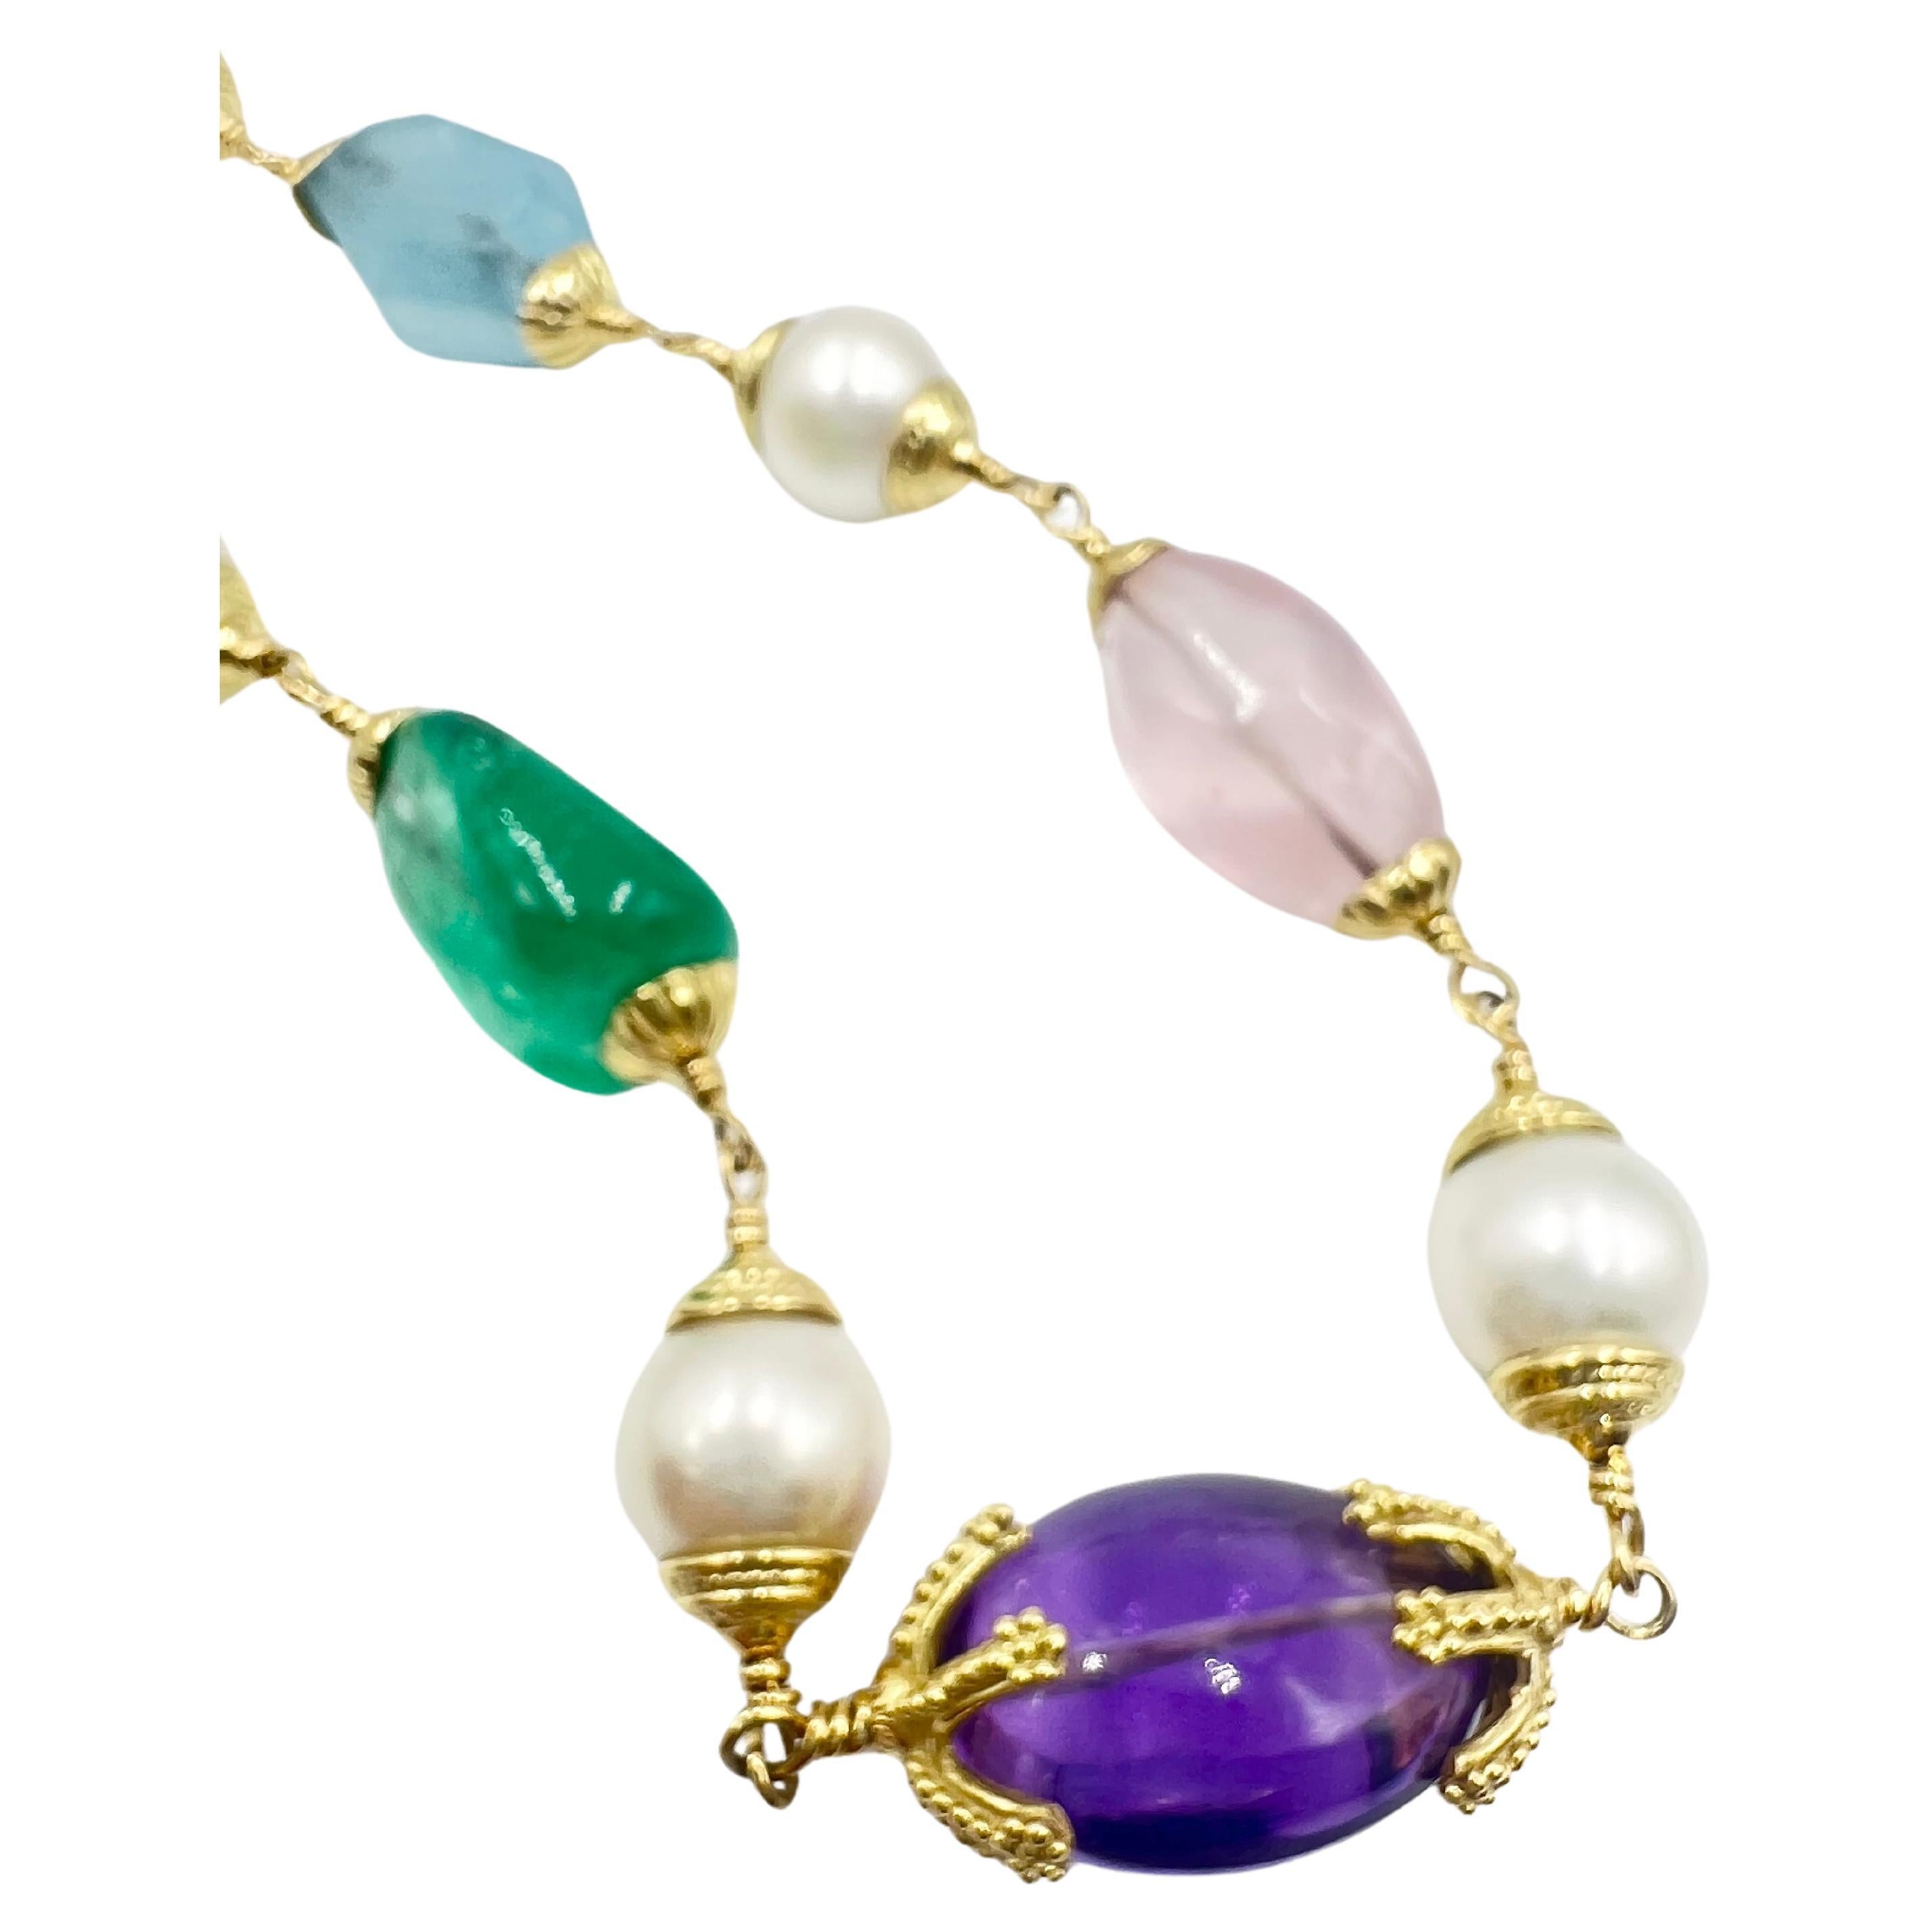 Women's Seaman Schepps 18k Gold Multi-Gemstone Baroque Bead Necklace